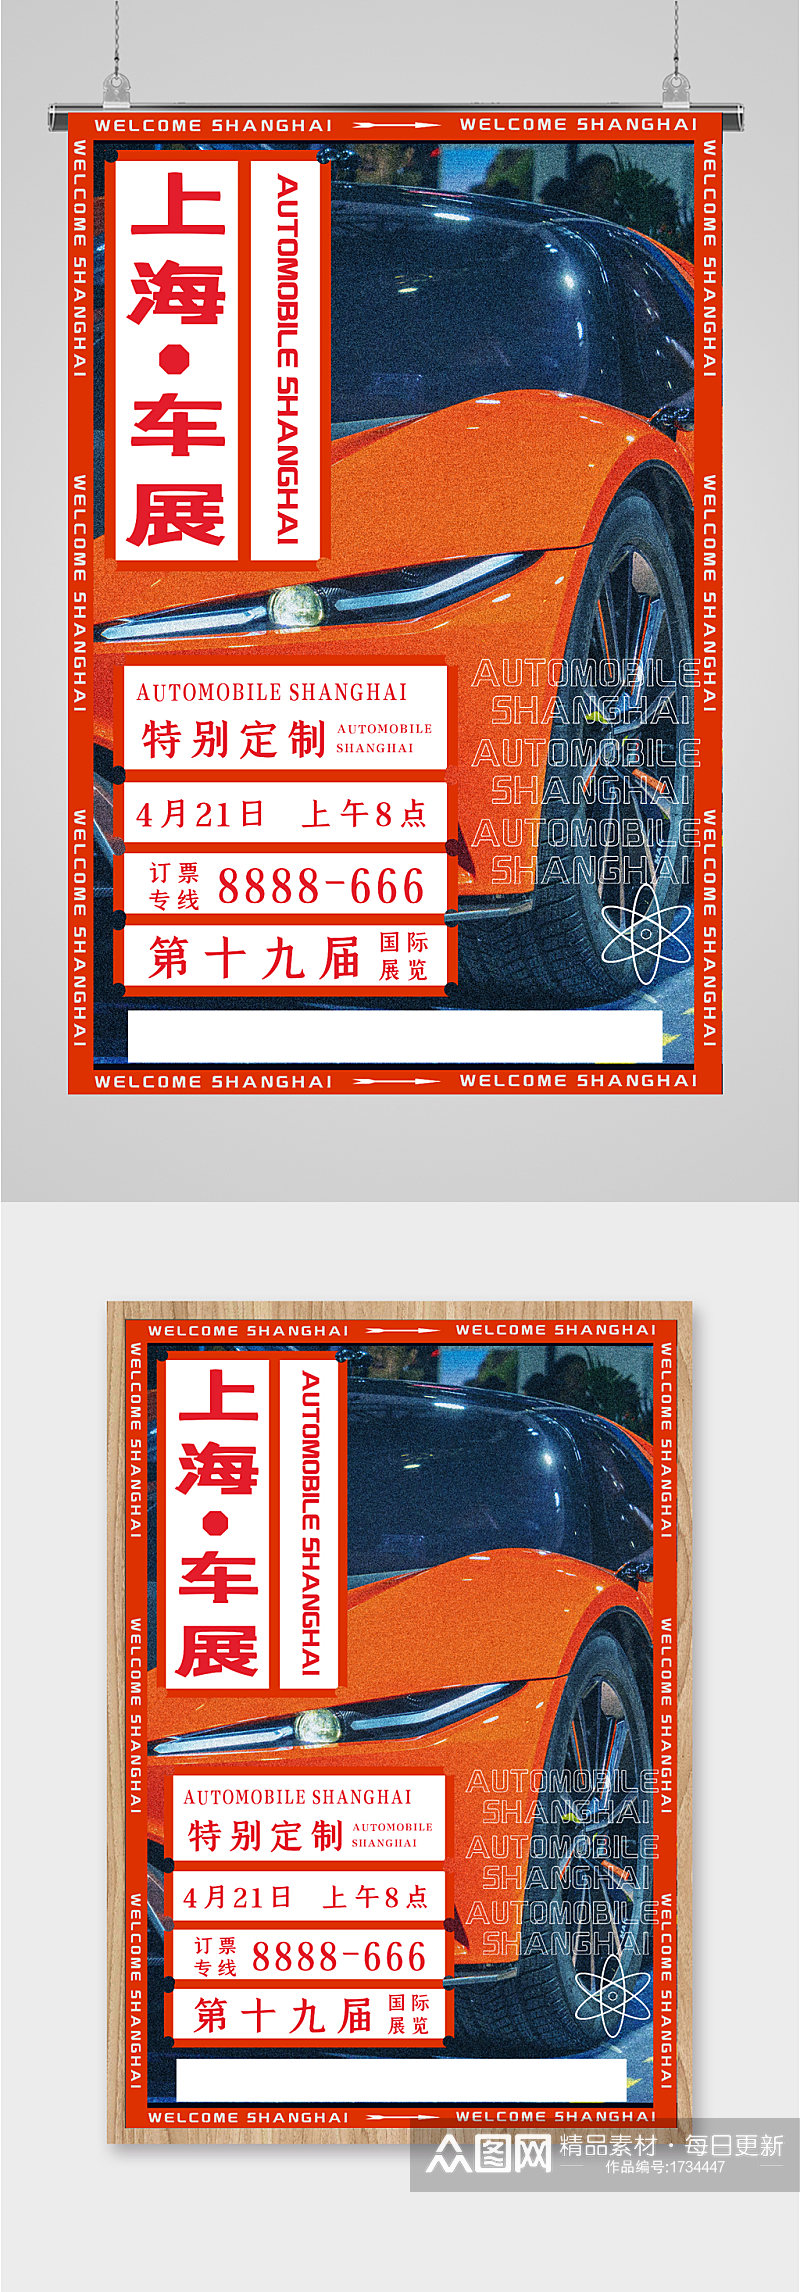 上海汽车展览会海报素材